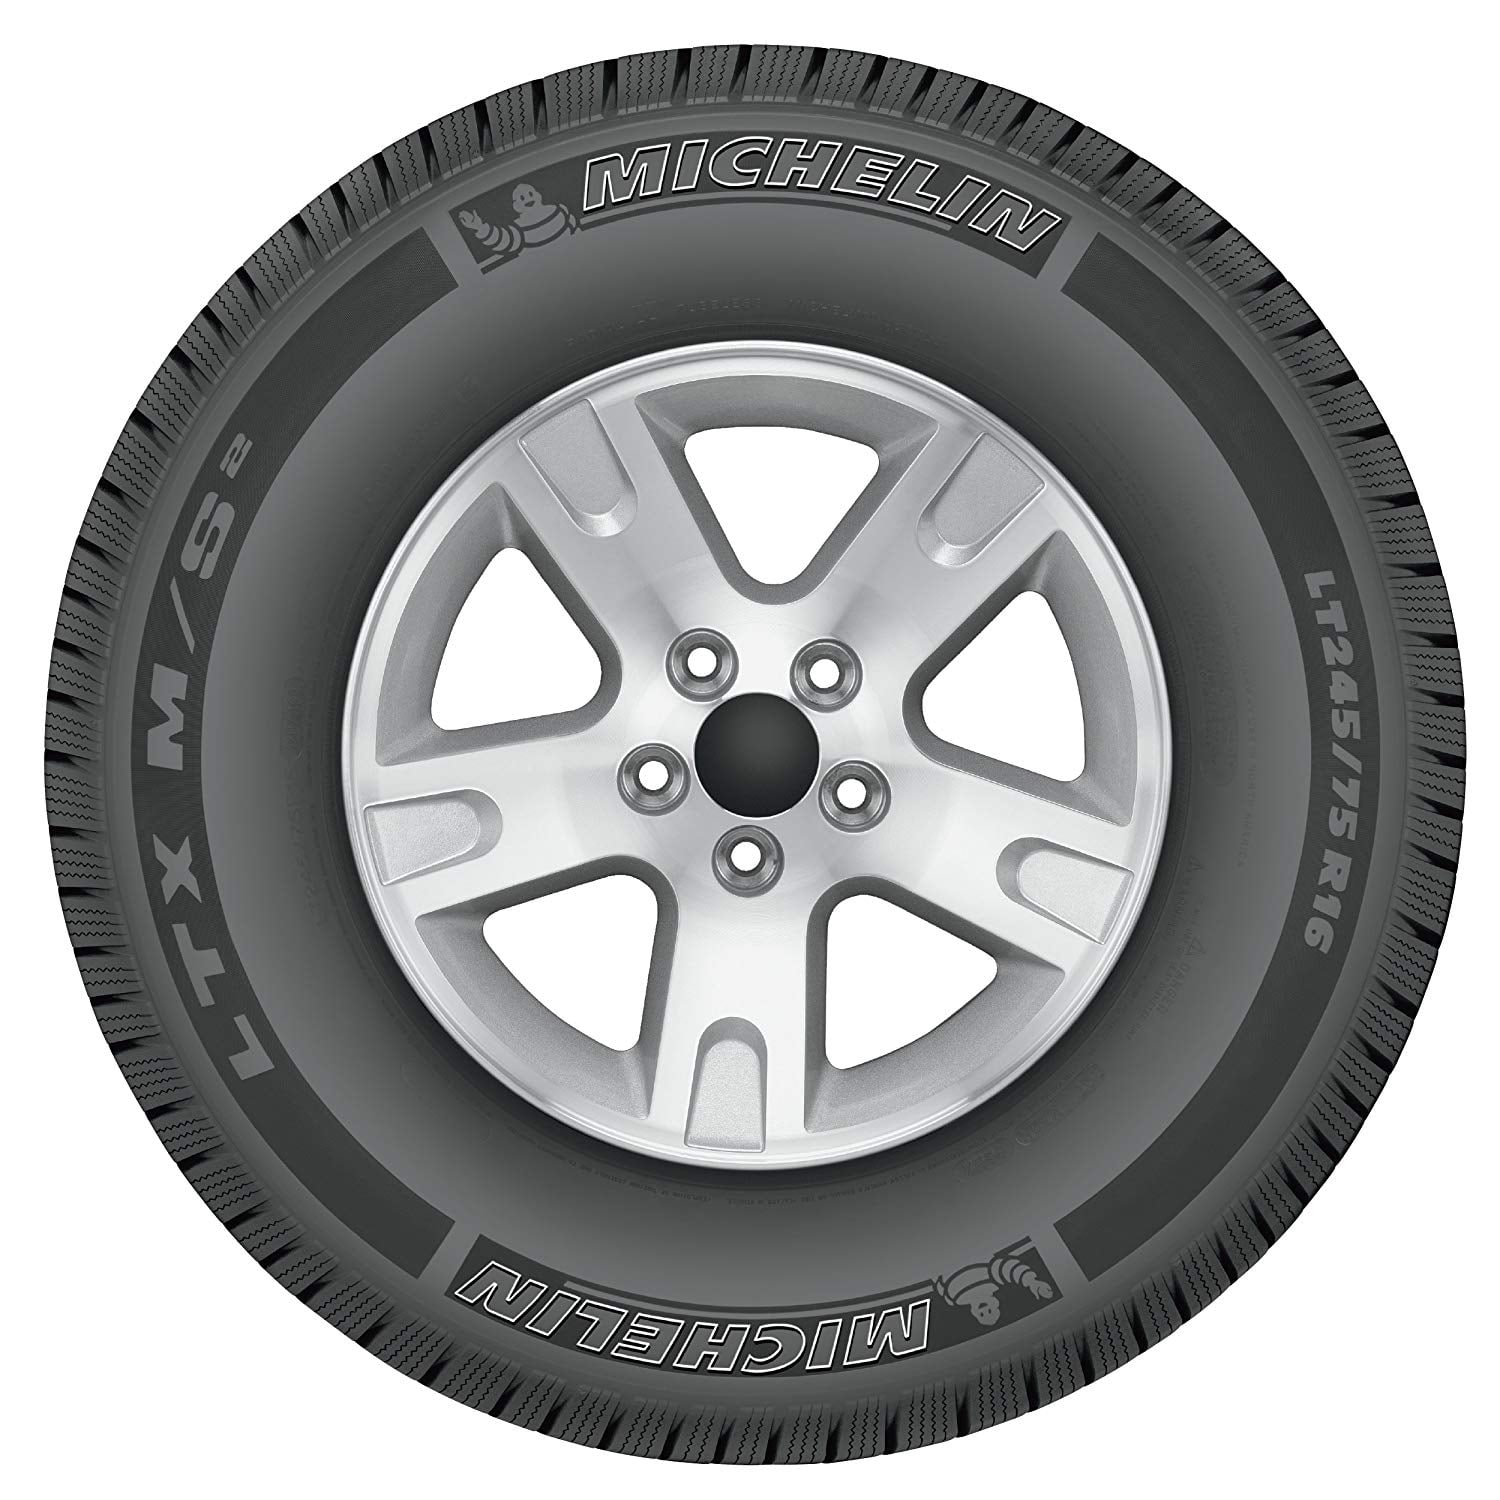 Kenia linda Inhalar Michelin LTX M/S2 225/70R16 101 T Tire - Walmart.com